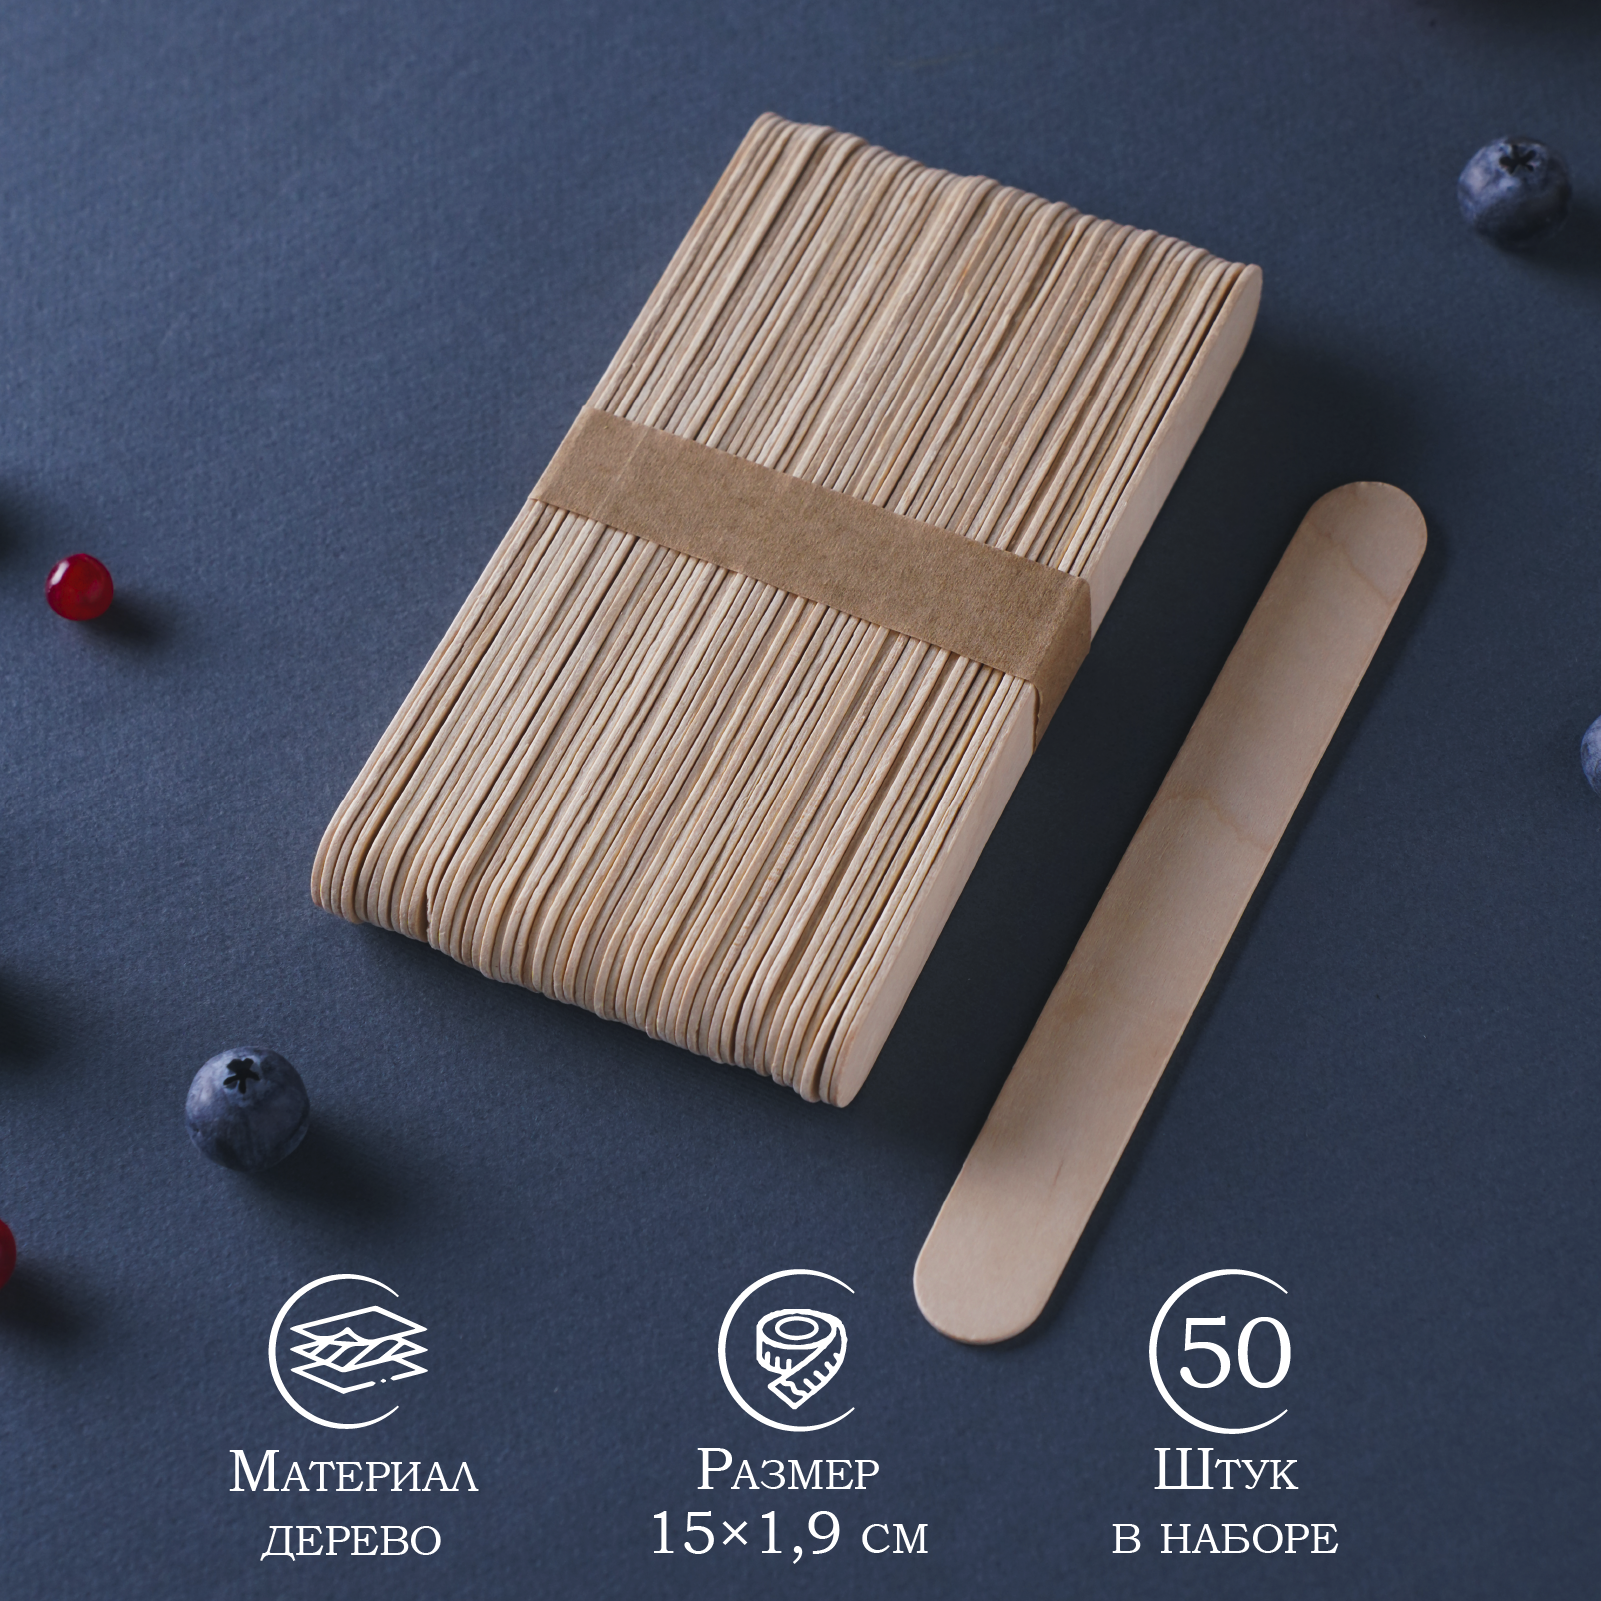 Набор деревянных палочек для мороженого, 15×1,9 см, 50 шт